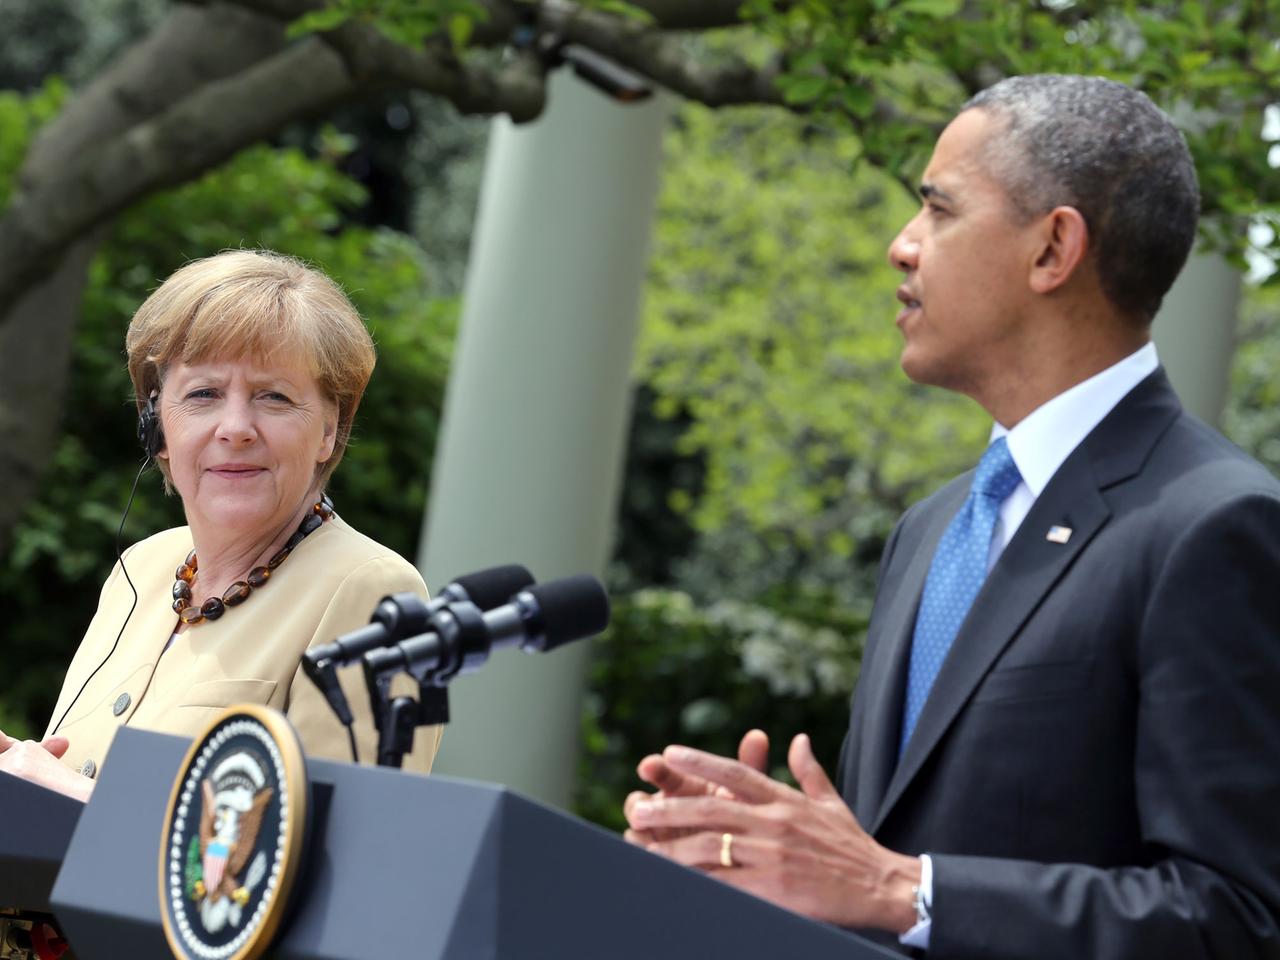 US-Präsident Barack Obama und Bundeskanzlerin Angela Merkel (CDU) sprechen am 02.05.2014 nach einem Treffen auf einer Pressekonferenz im Rosengarten des Weißen Hauses in Washington (USA) zu den Medienvertretern.